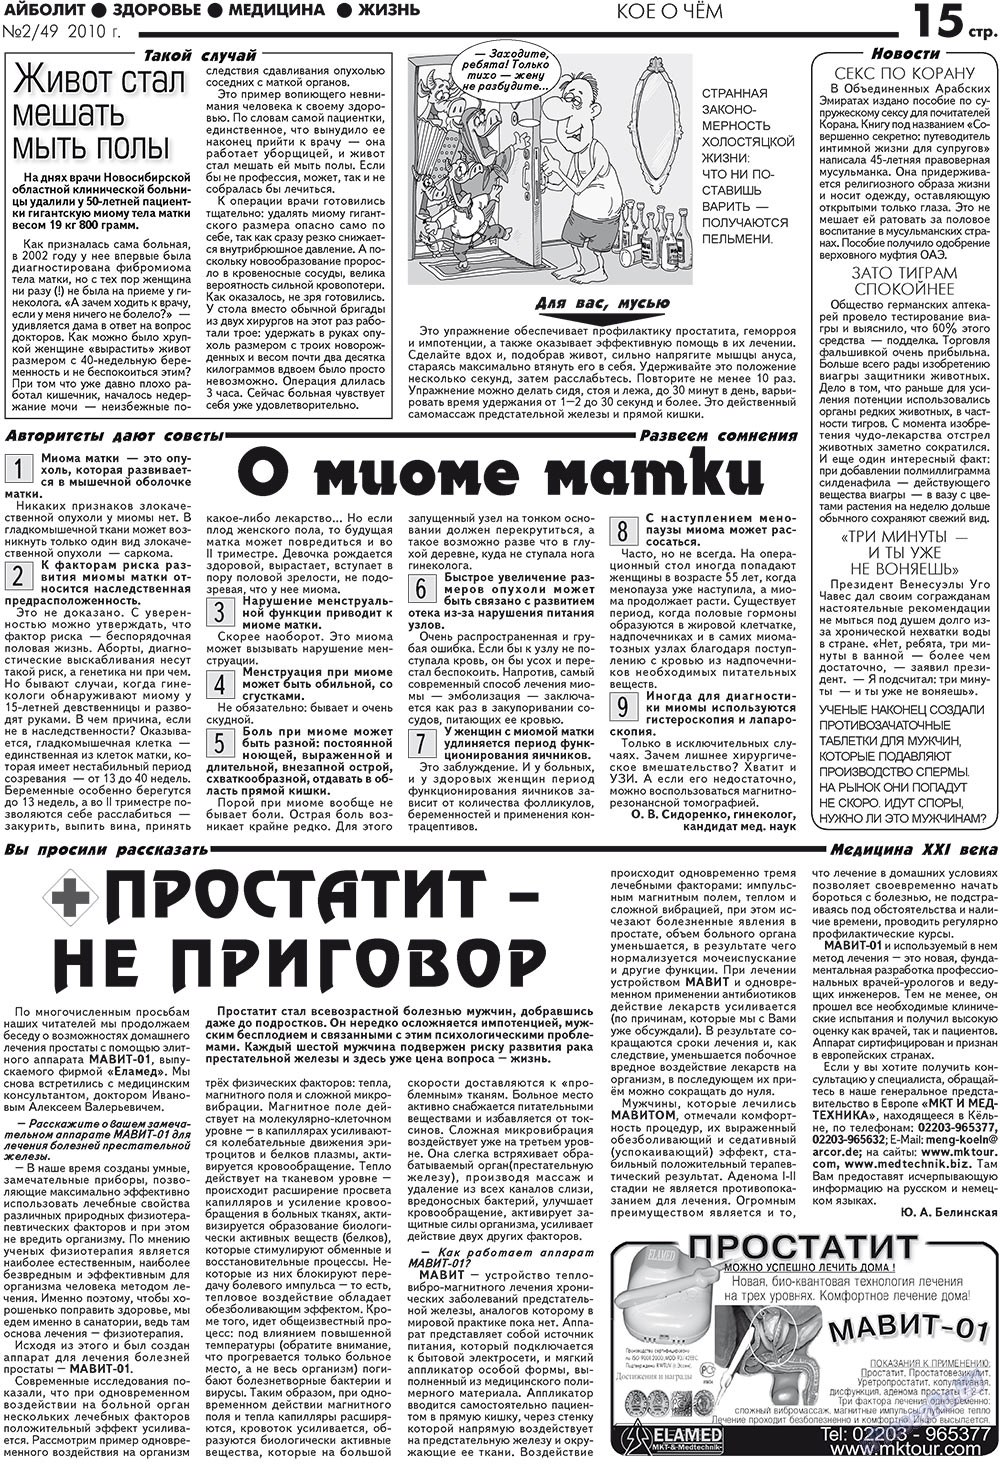 АйБолит, газета. 2010 №2 стр.15